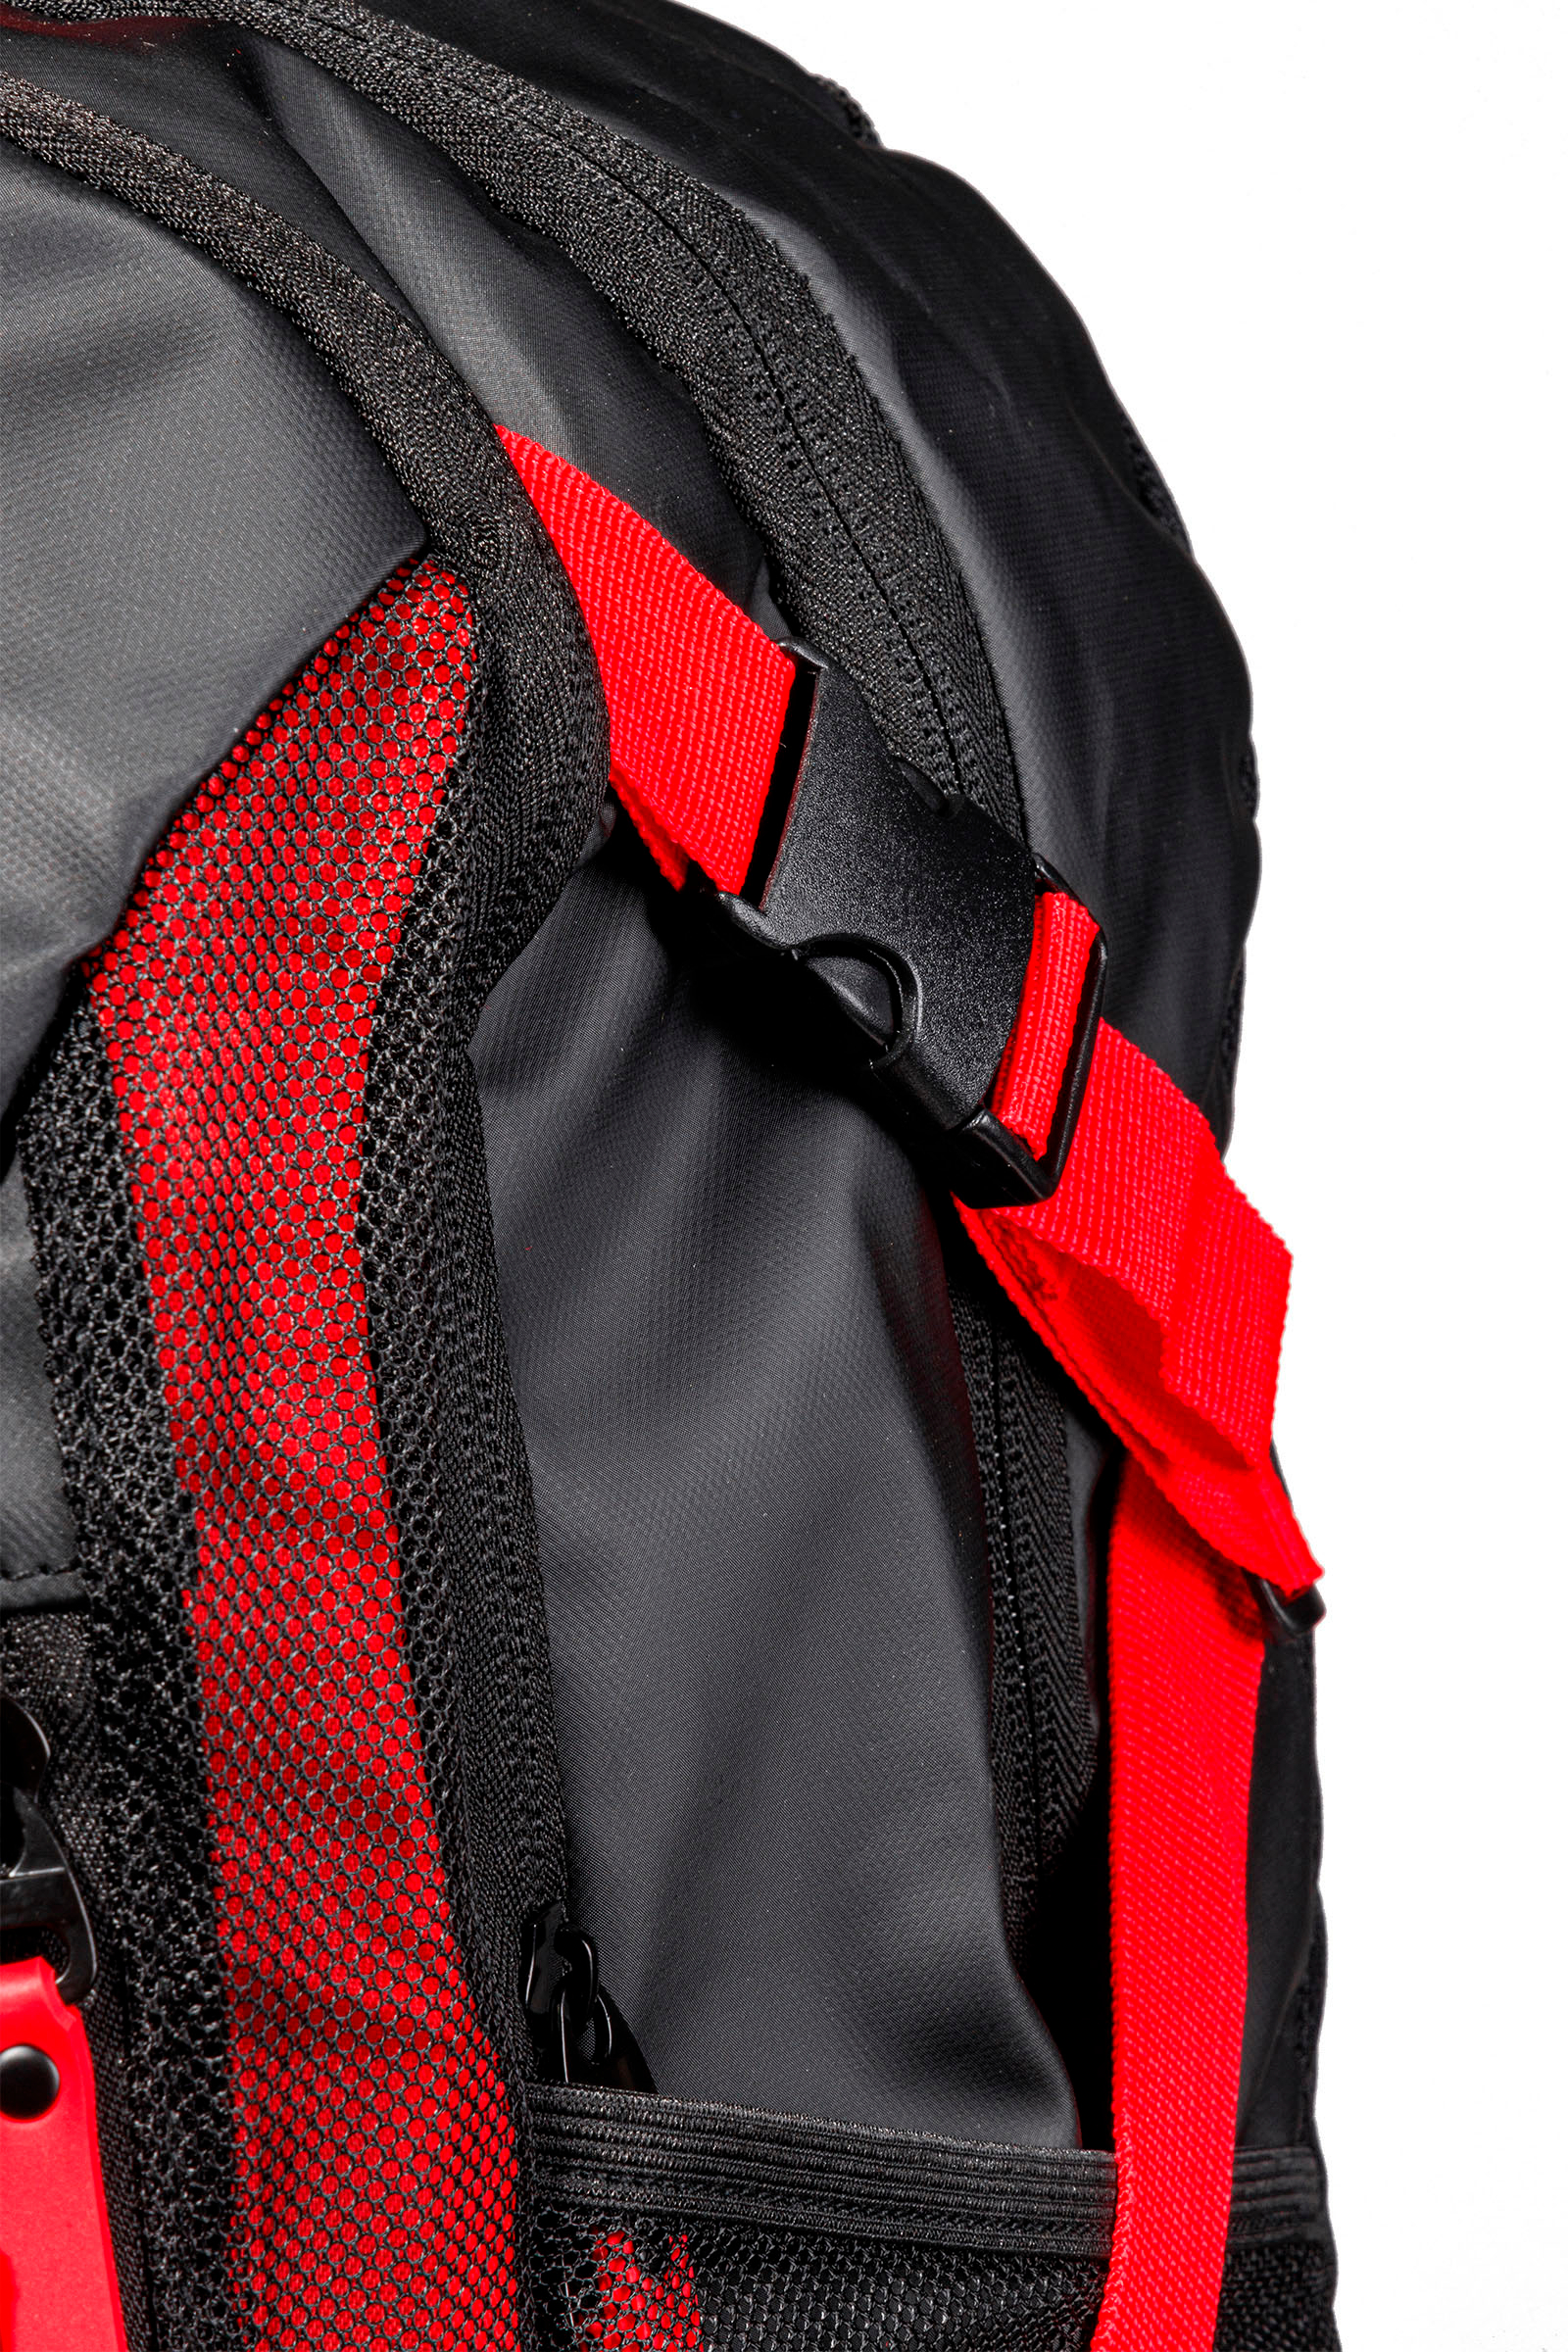 GRAVITY HYDROGEN BACKPACK - BLACK,RED - Hydrogen - Luxury Sportwear